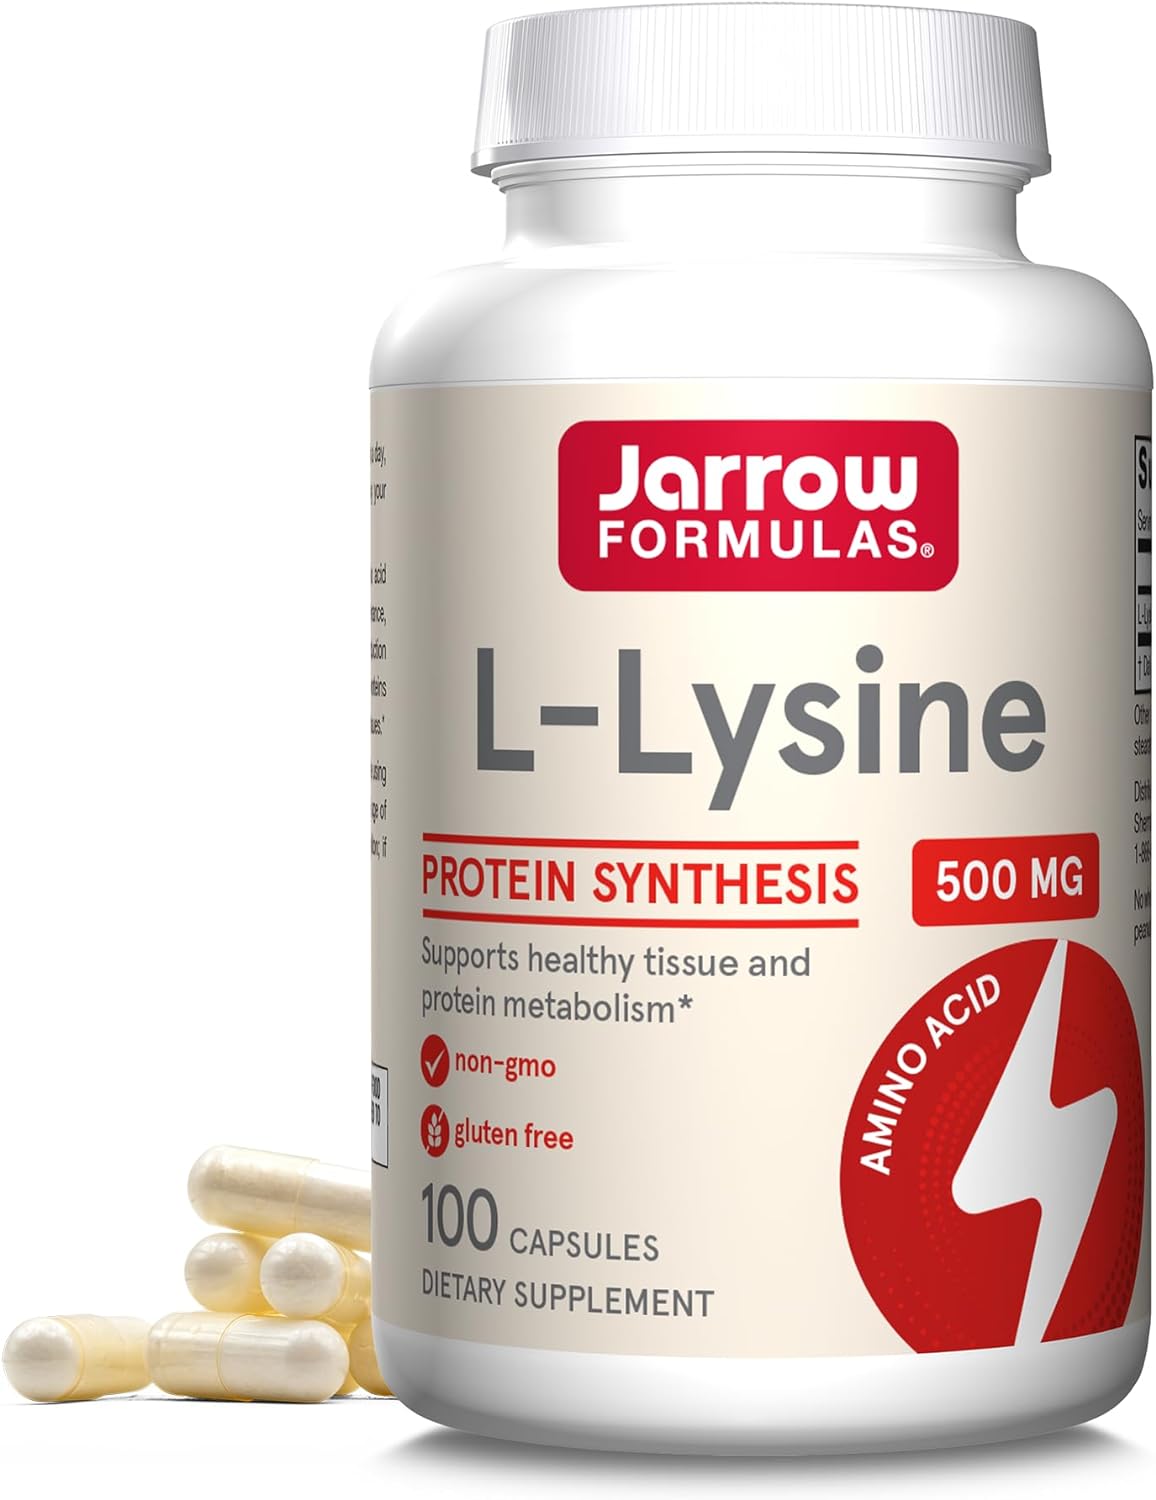 Jarrow's L-Lysine